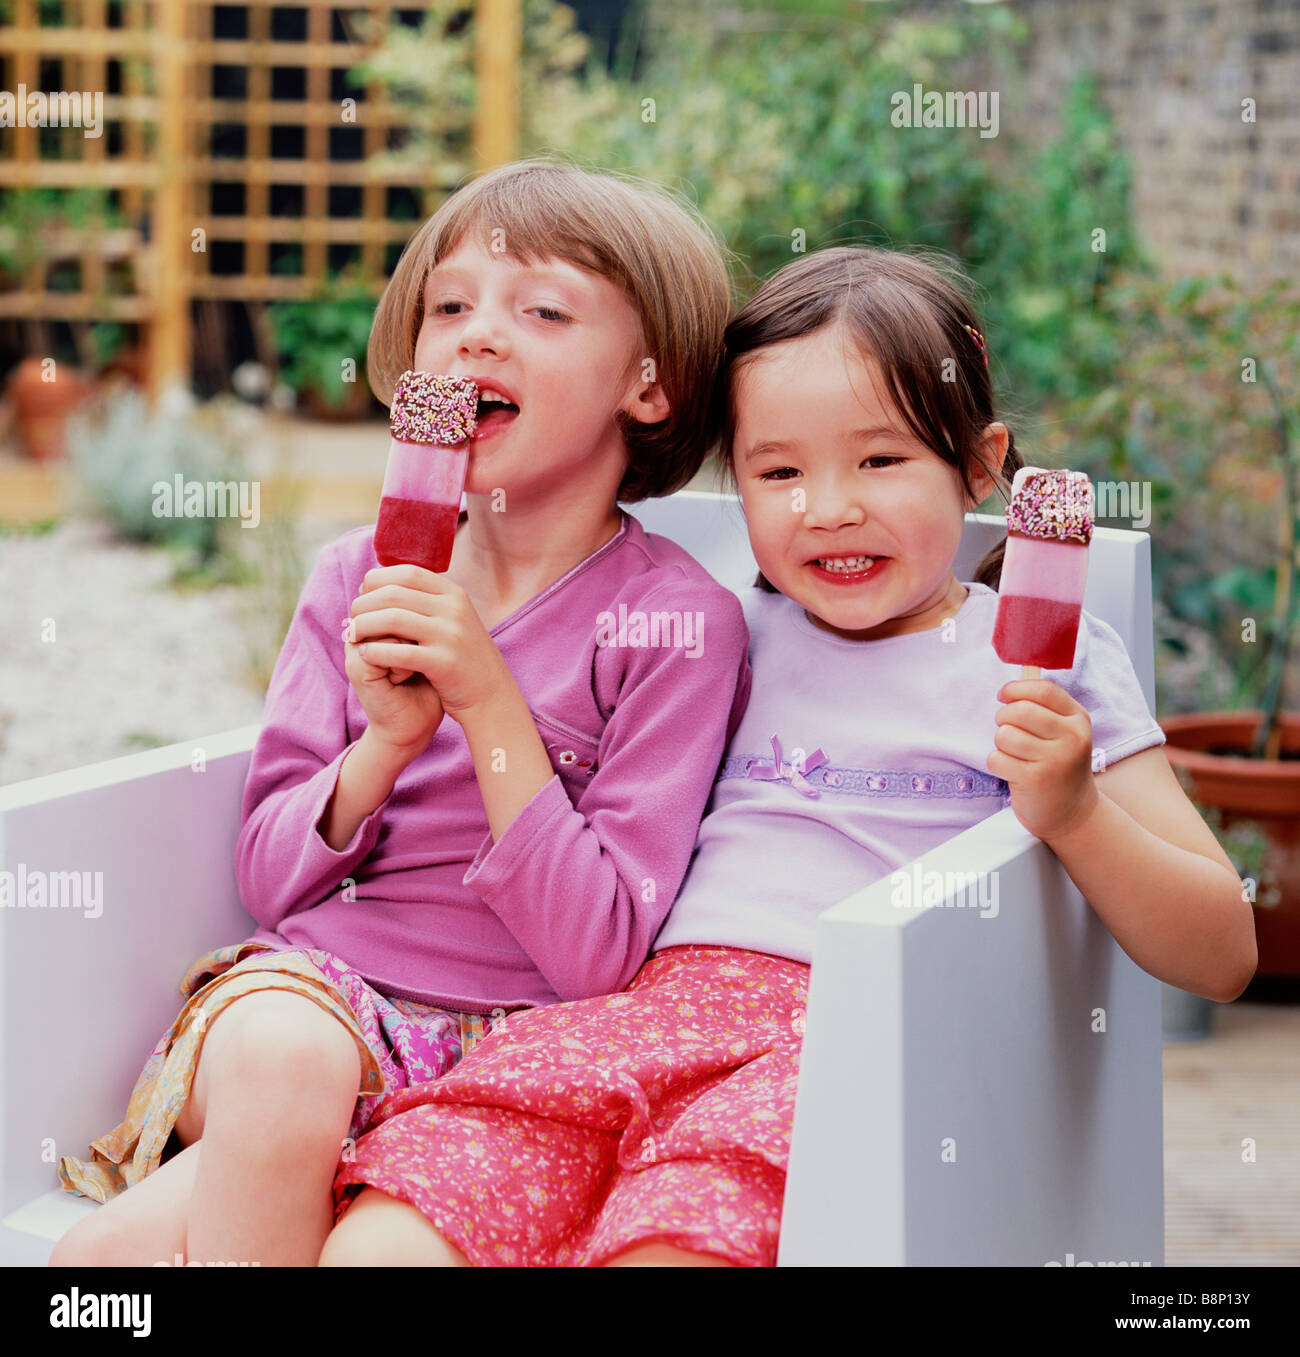 zwei Mädchen essen Eis am Stiehl im Garten Stockfoto